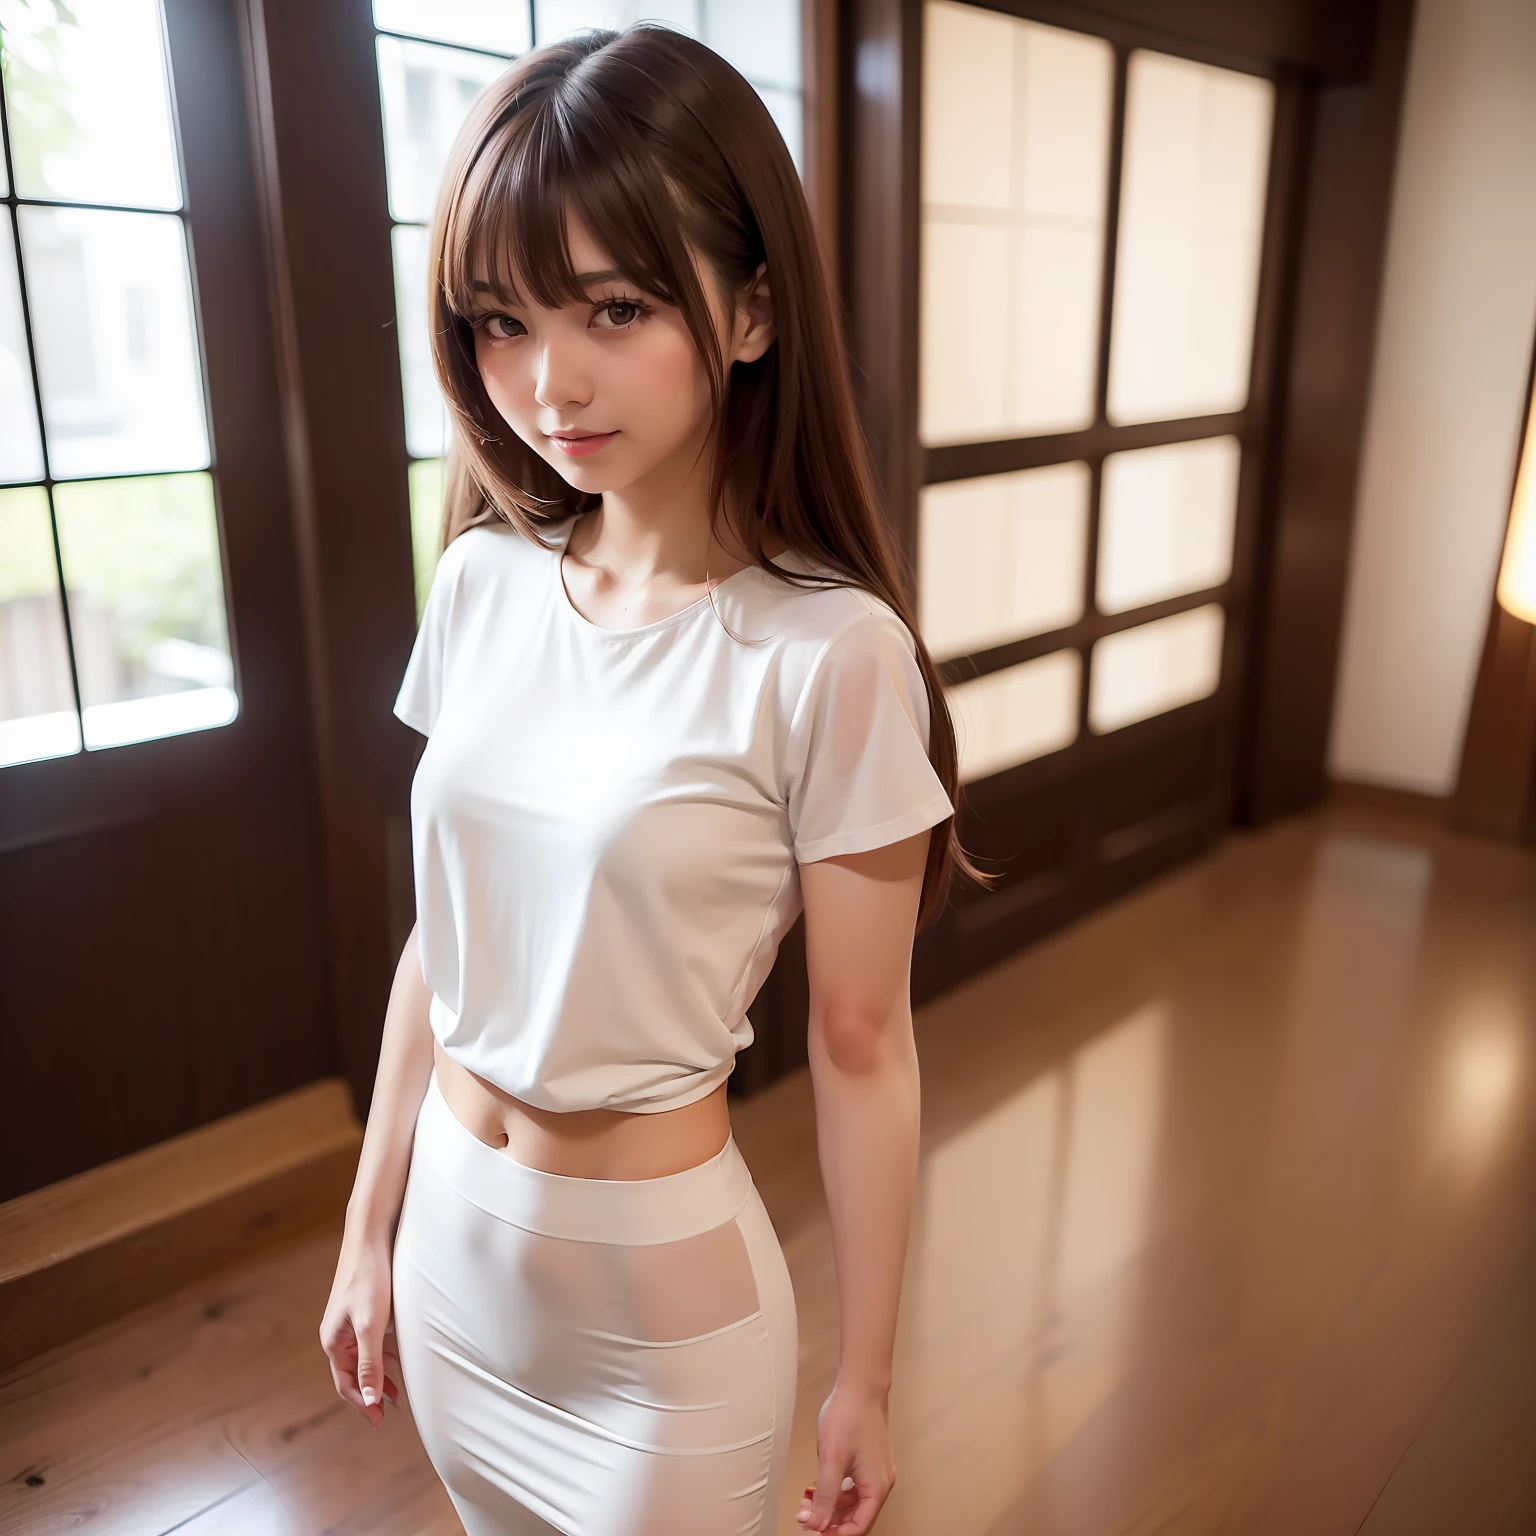 ((最高品質, 8K, テーブルトップ: 1.3)), 全身, (最高品質, テーブルトップ: 1.2)), かわいい日本人女性の写真, 女の子1人, 25歳の美しい日本の女の子, ((胸元の開いた白いtシャツ: 8.5)), (全身写真撮影), 全身 portrait, 難しい , とても繊細な体, 小さい breasts, ((細いウエスト: 5.5)), (スリムな腹筋: 3.5), (小さい), (女性 160 cm), フォーカスシャープニング: 1.2, 卓越した美スタイル: 1.4, スリムな腹筋: 1.2, (((茶髪, 大きい: 1.2)), 非常に詳細な顔と肌の質感, 詳細な目, 二重まぶた, 美容室の内部，全身 portrait, 風になびく髪, 軽い前髪，笑い，腰にシザーケースをつけています